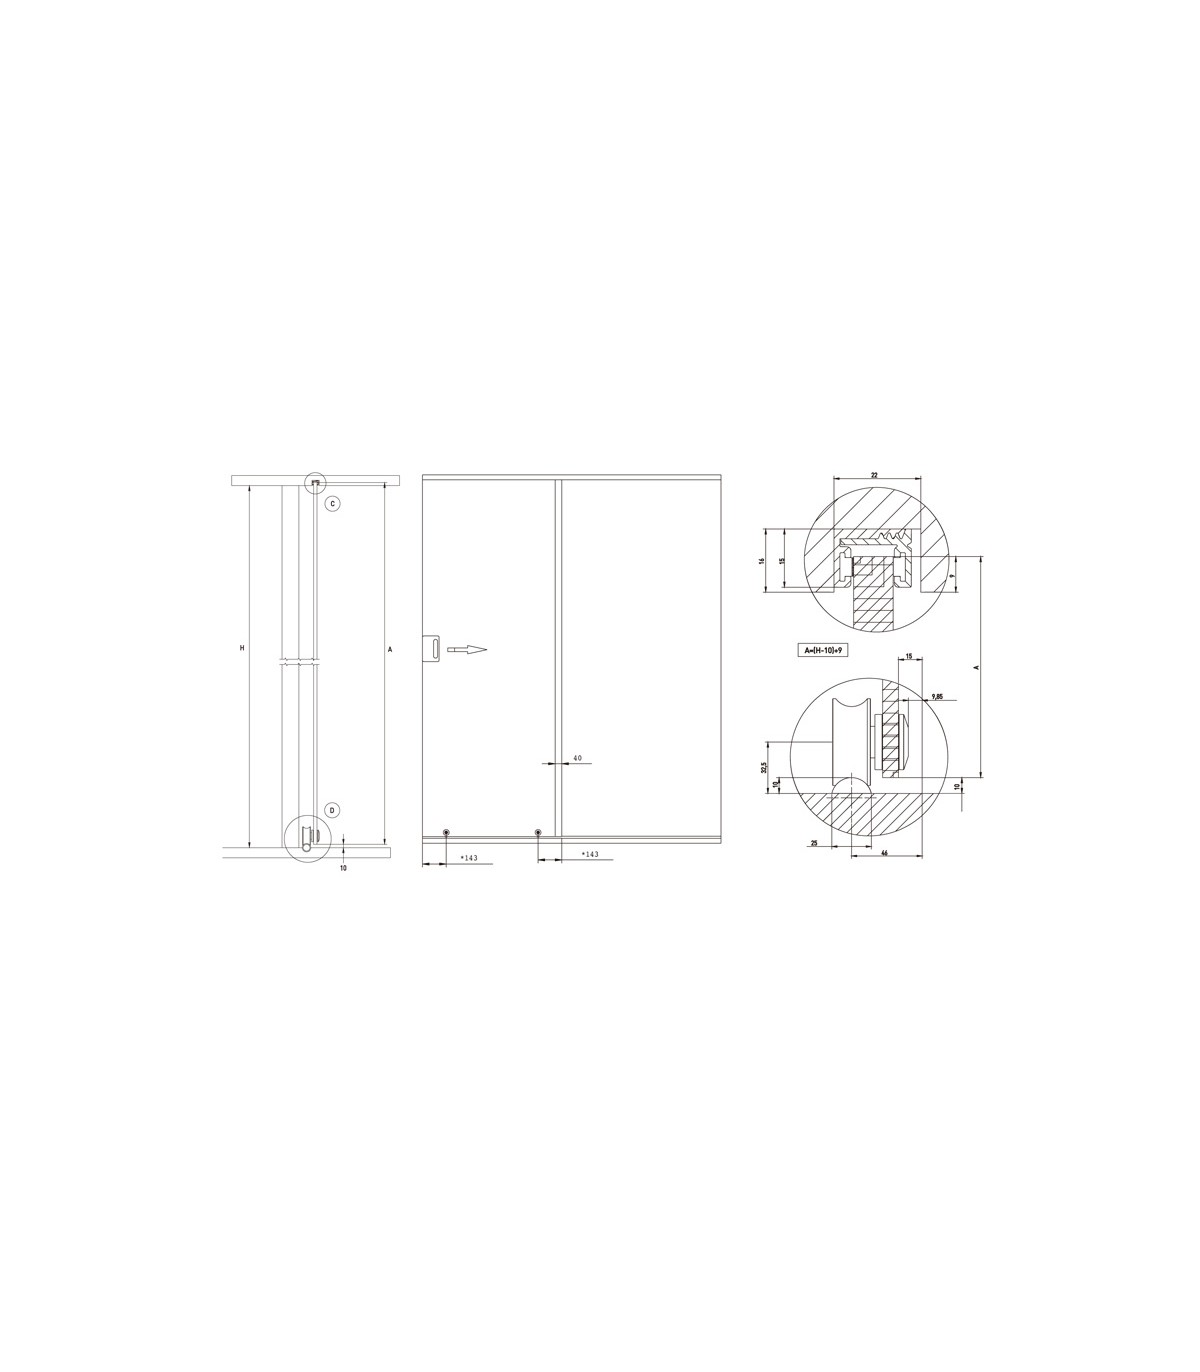 Mecanismos para puertas correderas SV - I120 Terra - Construcción  (Materiales) - Mecanismos para puertas correderas